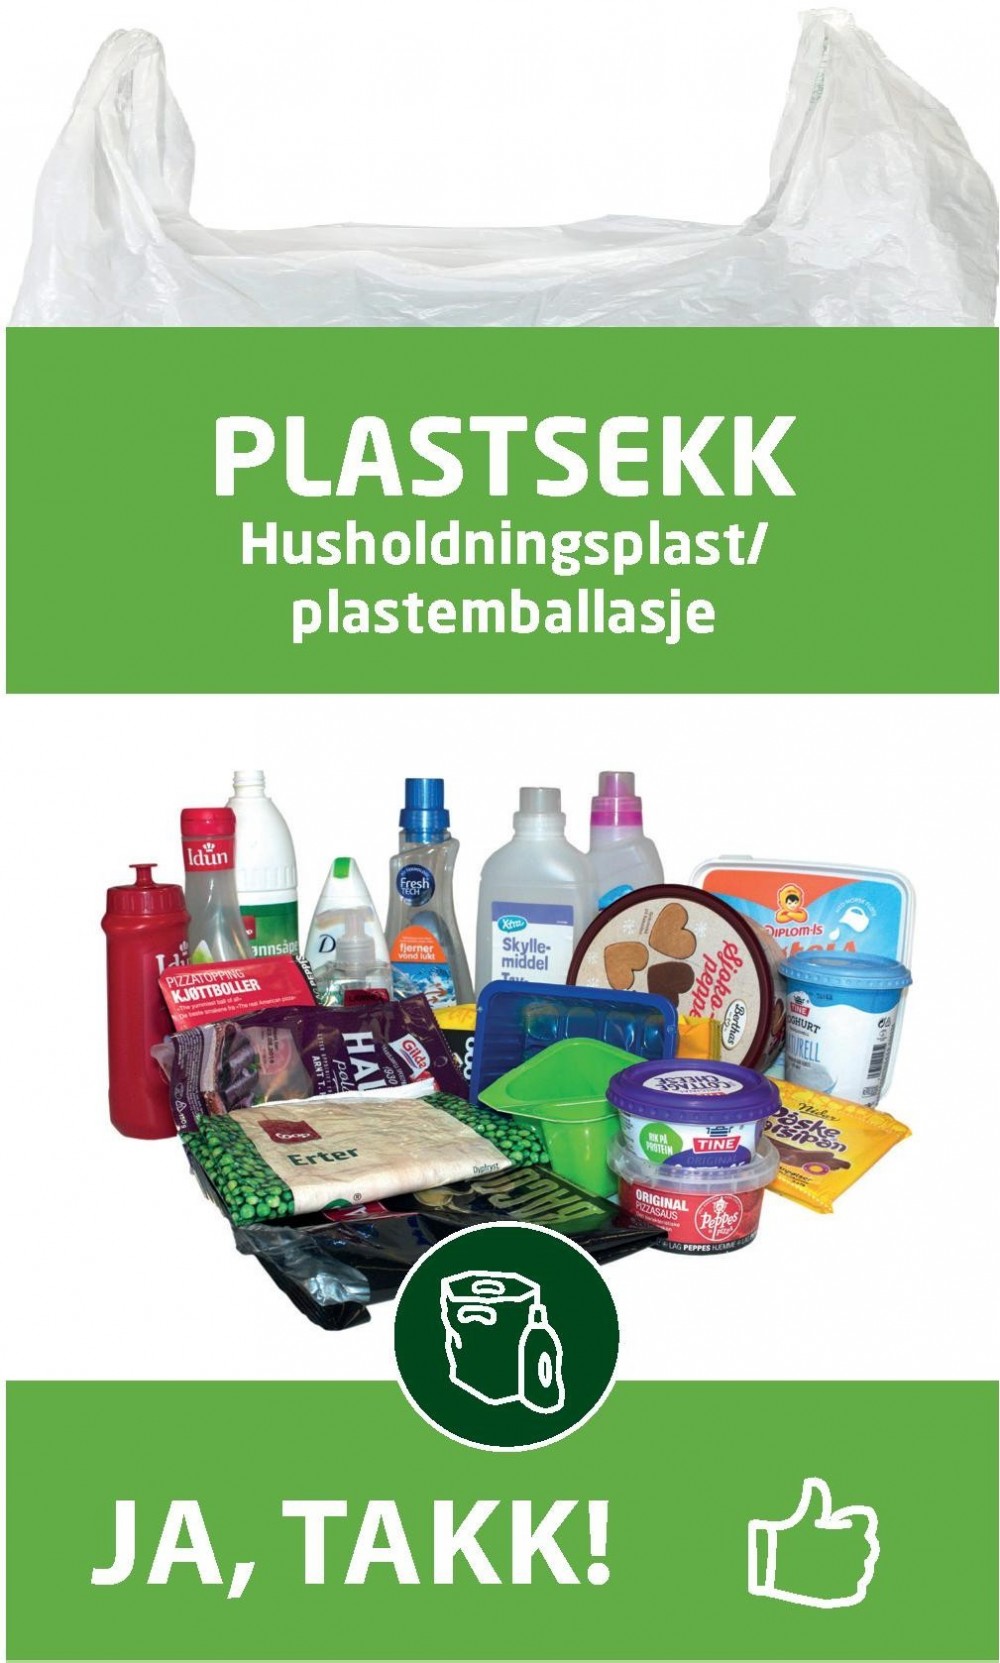 Plastsekk, husholdningsplast/plastemballasje